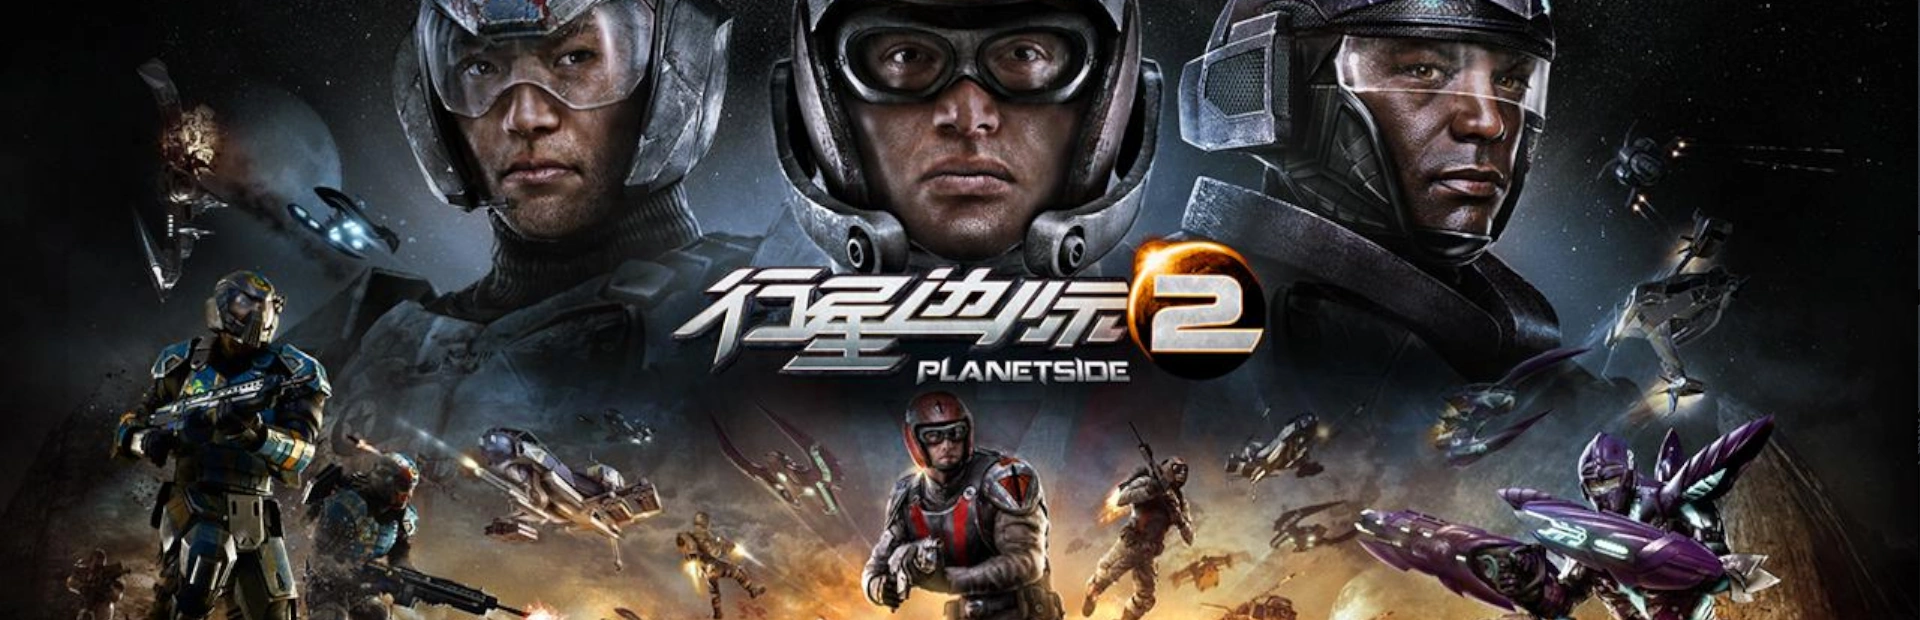 دانلود بازی PlanetSide 2 برای کامپیوتر | گیمباتو